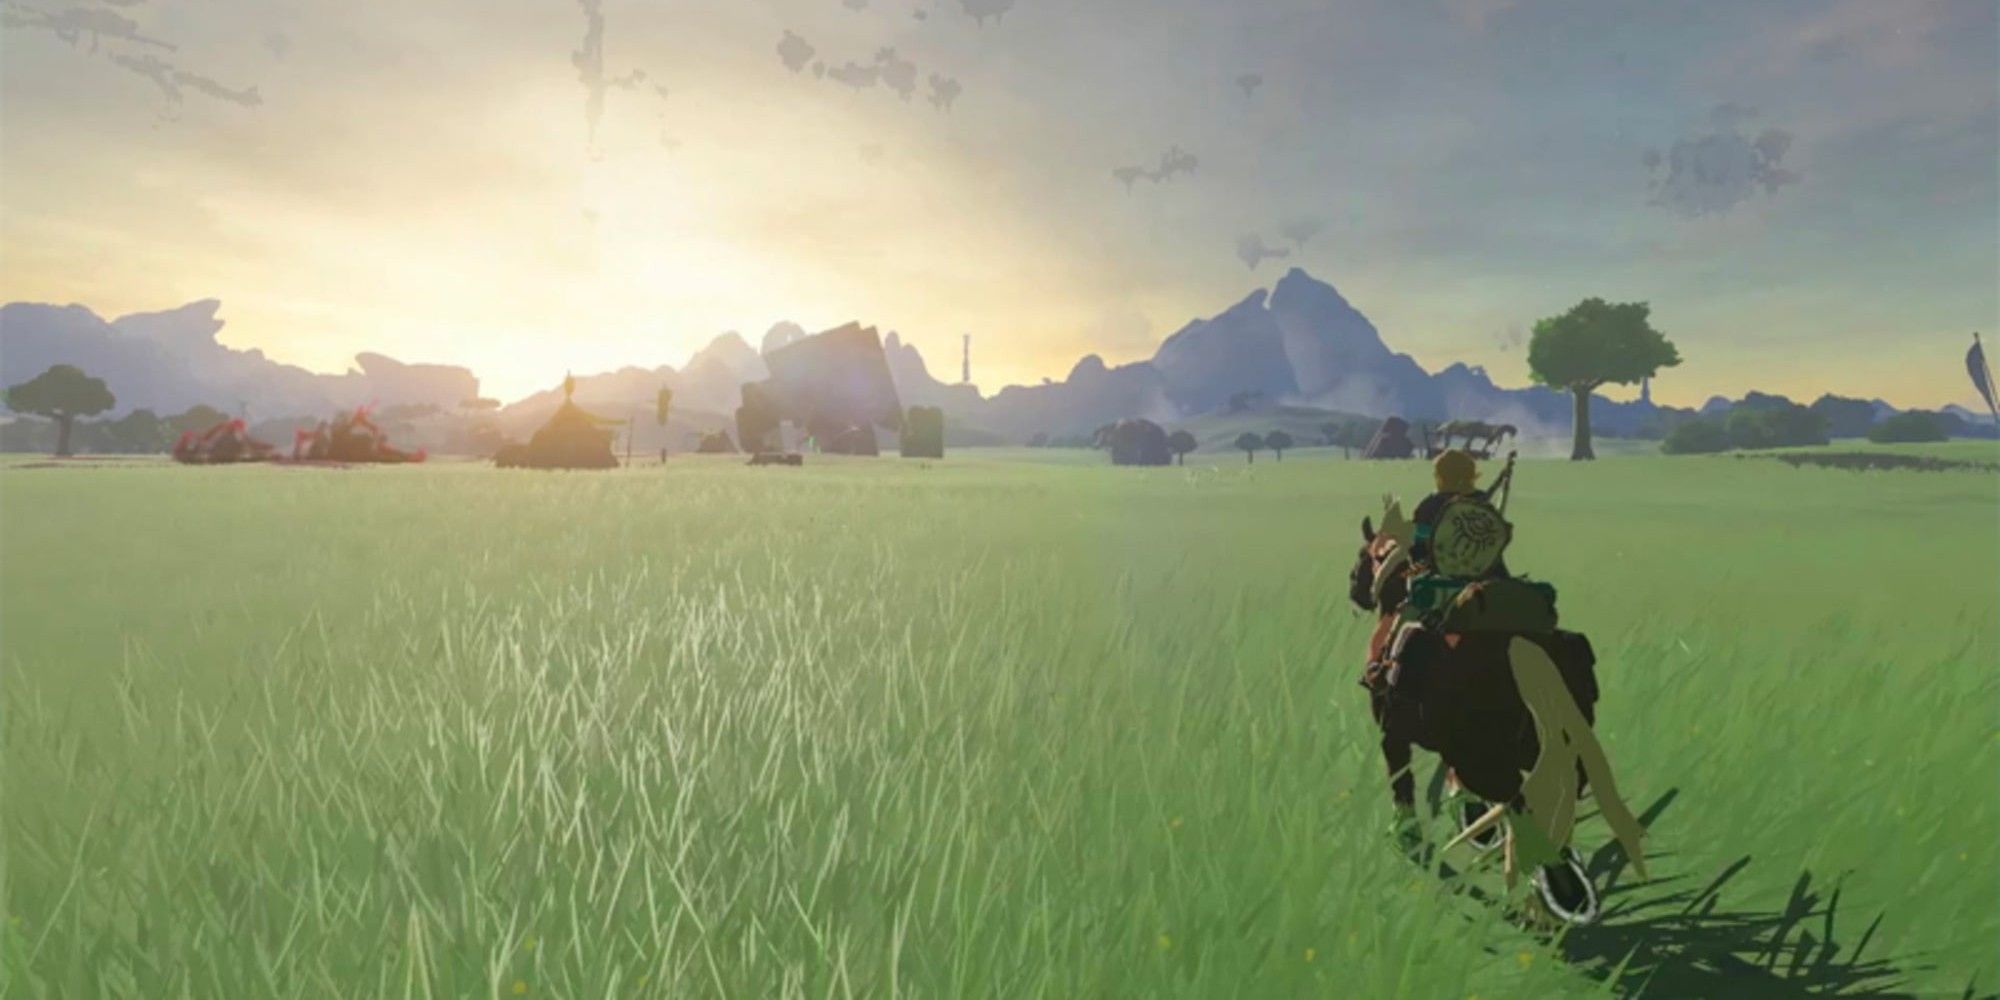 Link riding a horse through an open field of green grass with a sunset